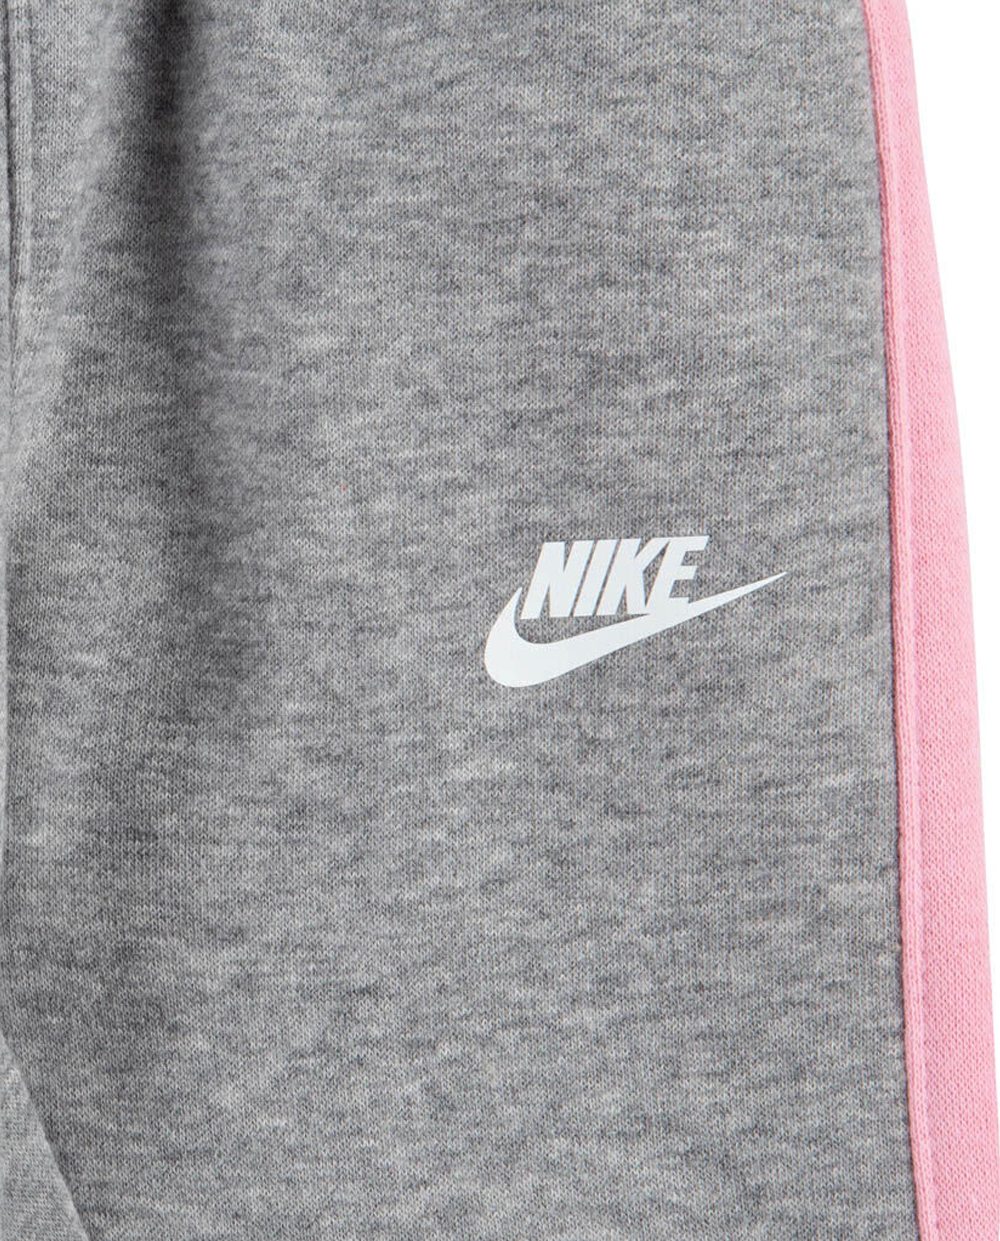 Fato de Treino Nike Cinzento com Branco e Rosa